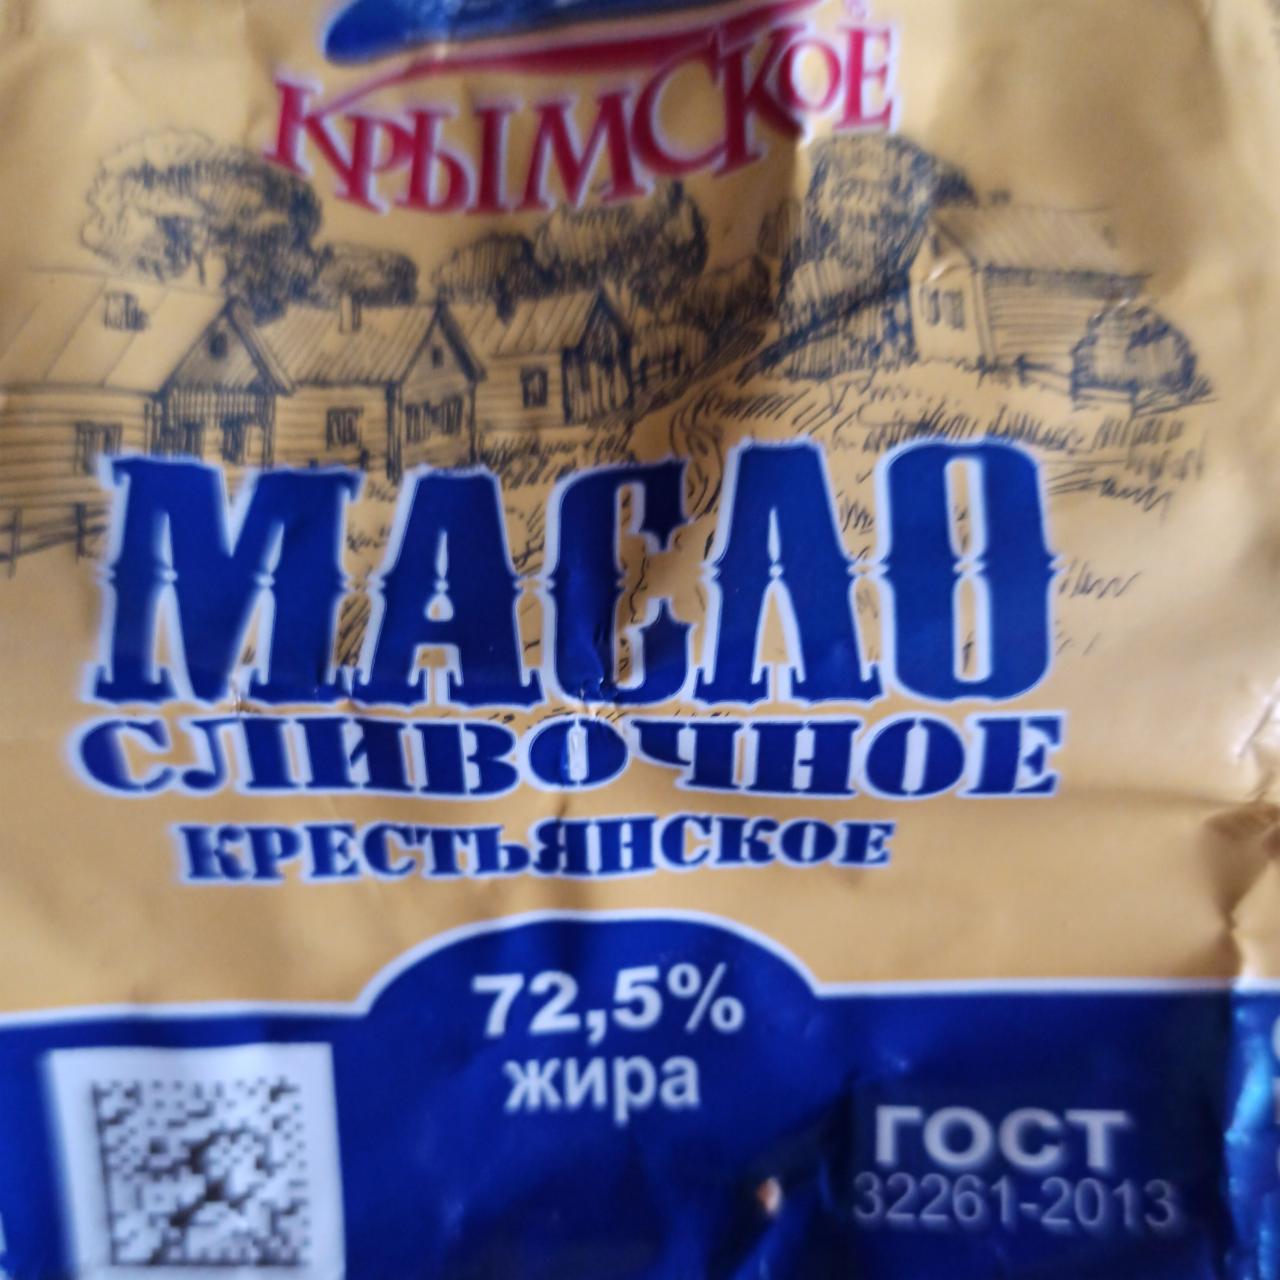 Фото - масло сливочное крестьянское 72,5% Крымское